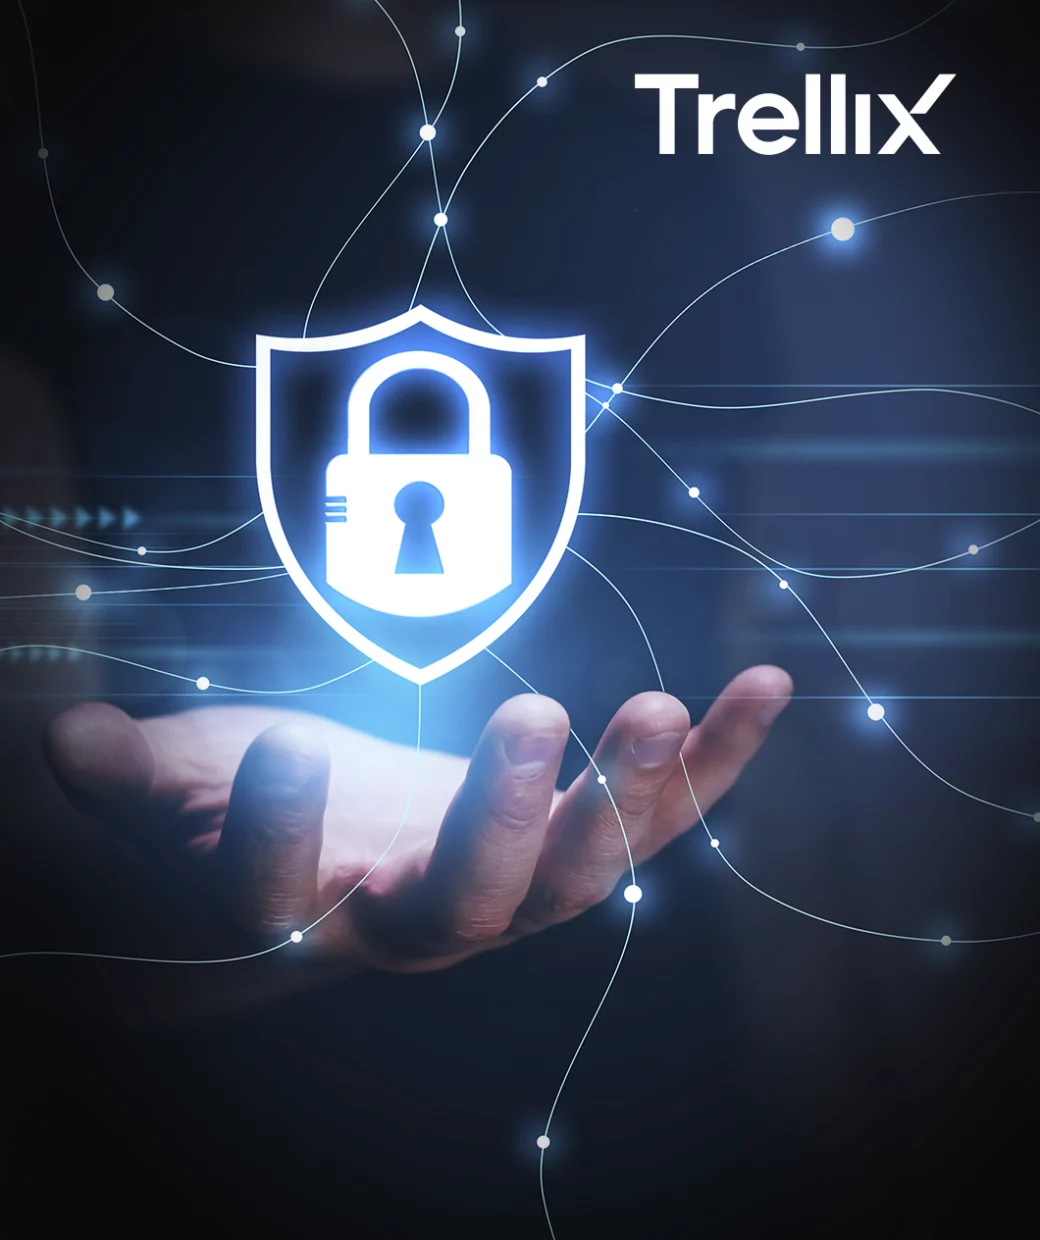 Sistemas de seguridad mejorados por las diversas soluciones y licencias de Trellix, del cual icorp es el mejor partner oficial de ManageEngine en México.